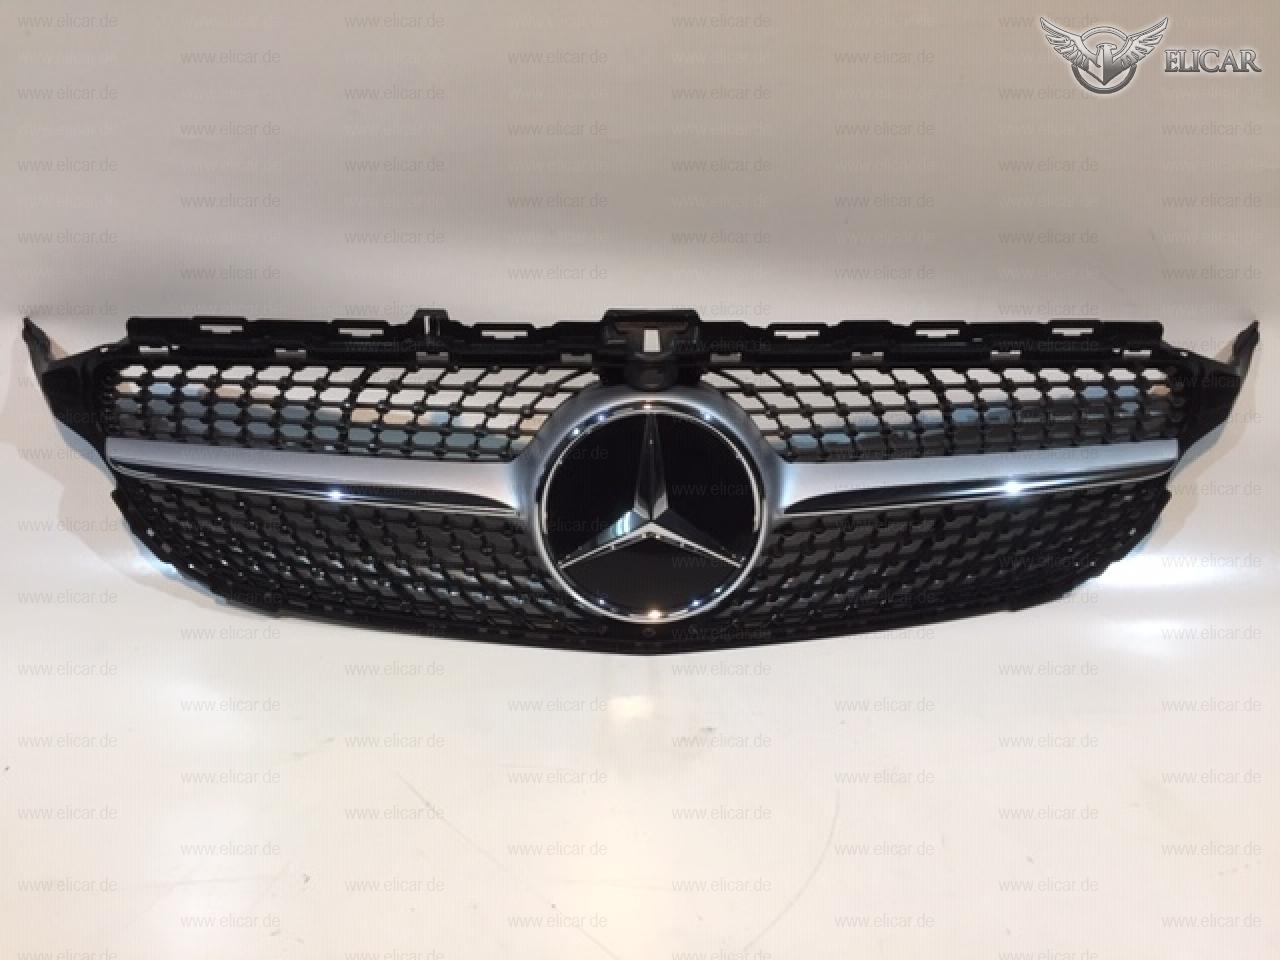 Grill / Kühlerverkleidung Diamantoptik    für Mercedes-Benz 